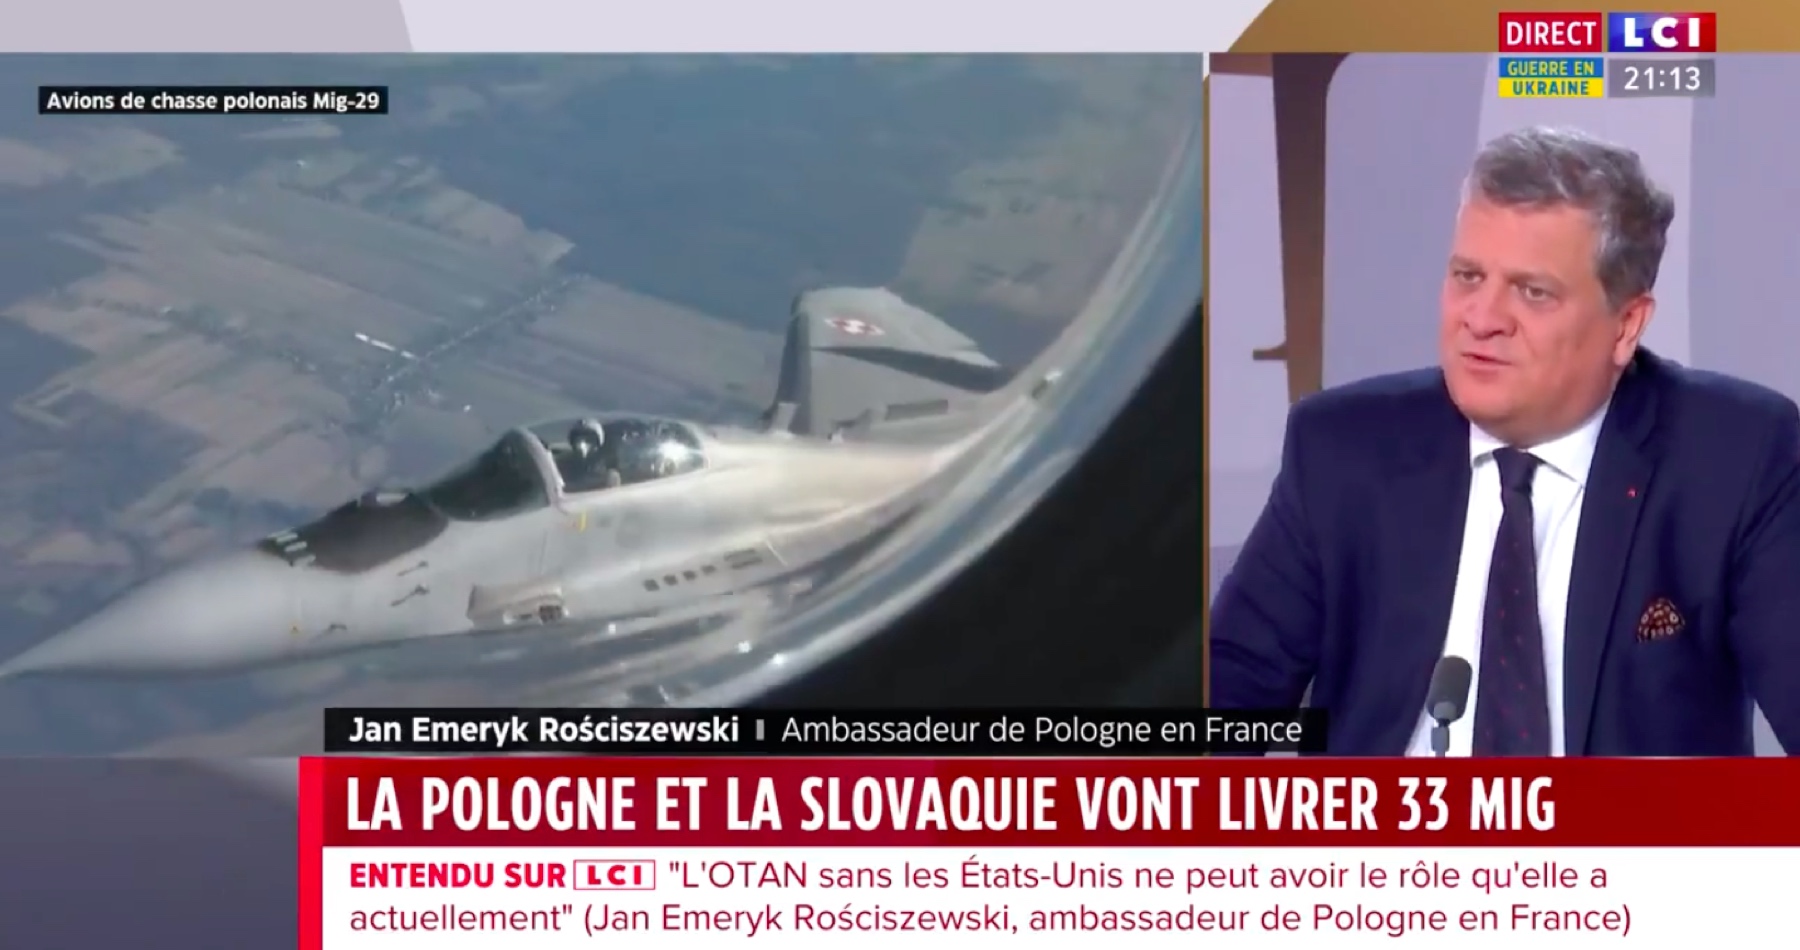 VIDEO: Polský velvyslanec ve Francii způsobil poprask svým výrokem pro francouzskou televizi, že když se Ukrajině nepodaří ubránit svoji nezávislost, bude muset NATO vstoupit do konfliktu na Ukrajině! Varšava se teď snaží výrok obrousit s tvrzením, že velvyslanec nemyslel přímo válku s Ruskem, ale pouze vstup do konfliktu v obecné rovině! Jenže to vyjde nastejno! Velvyslanec vysvětloval, proč Polsko a Slovensko pošlou na Ukrajinu 33 stíhaček MiG-29, je to prý pokus o zastavení Ruské armády v cestě do Evropy! Opravdu to myslí vážně?